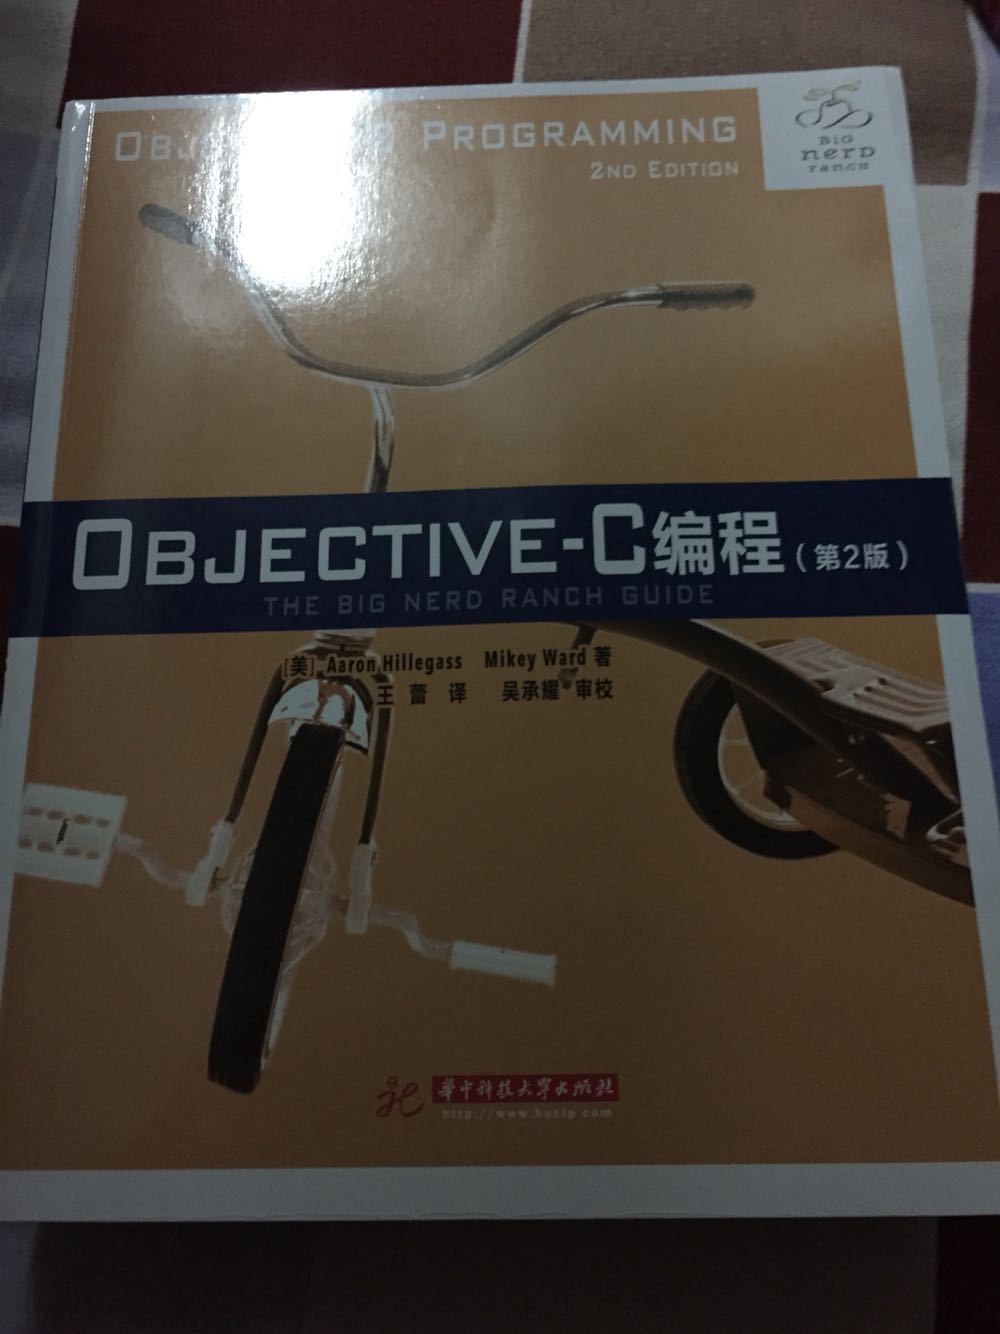 非常好的一本Objective c入门书籍，内容通俗易懂，虽然用的还是xcode6但是不影响学习